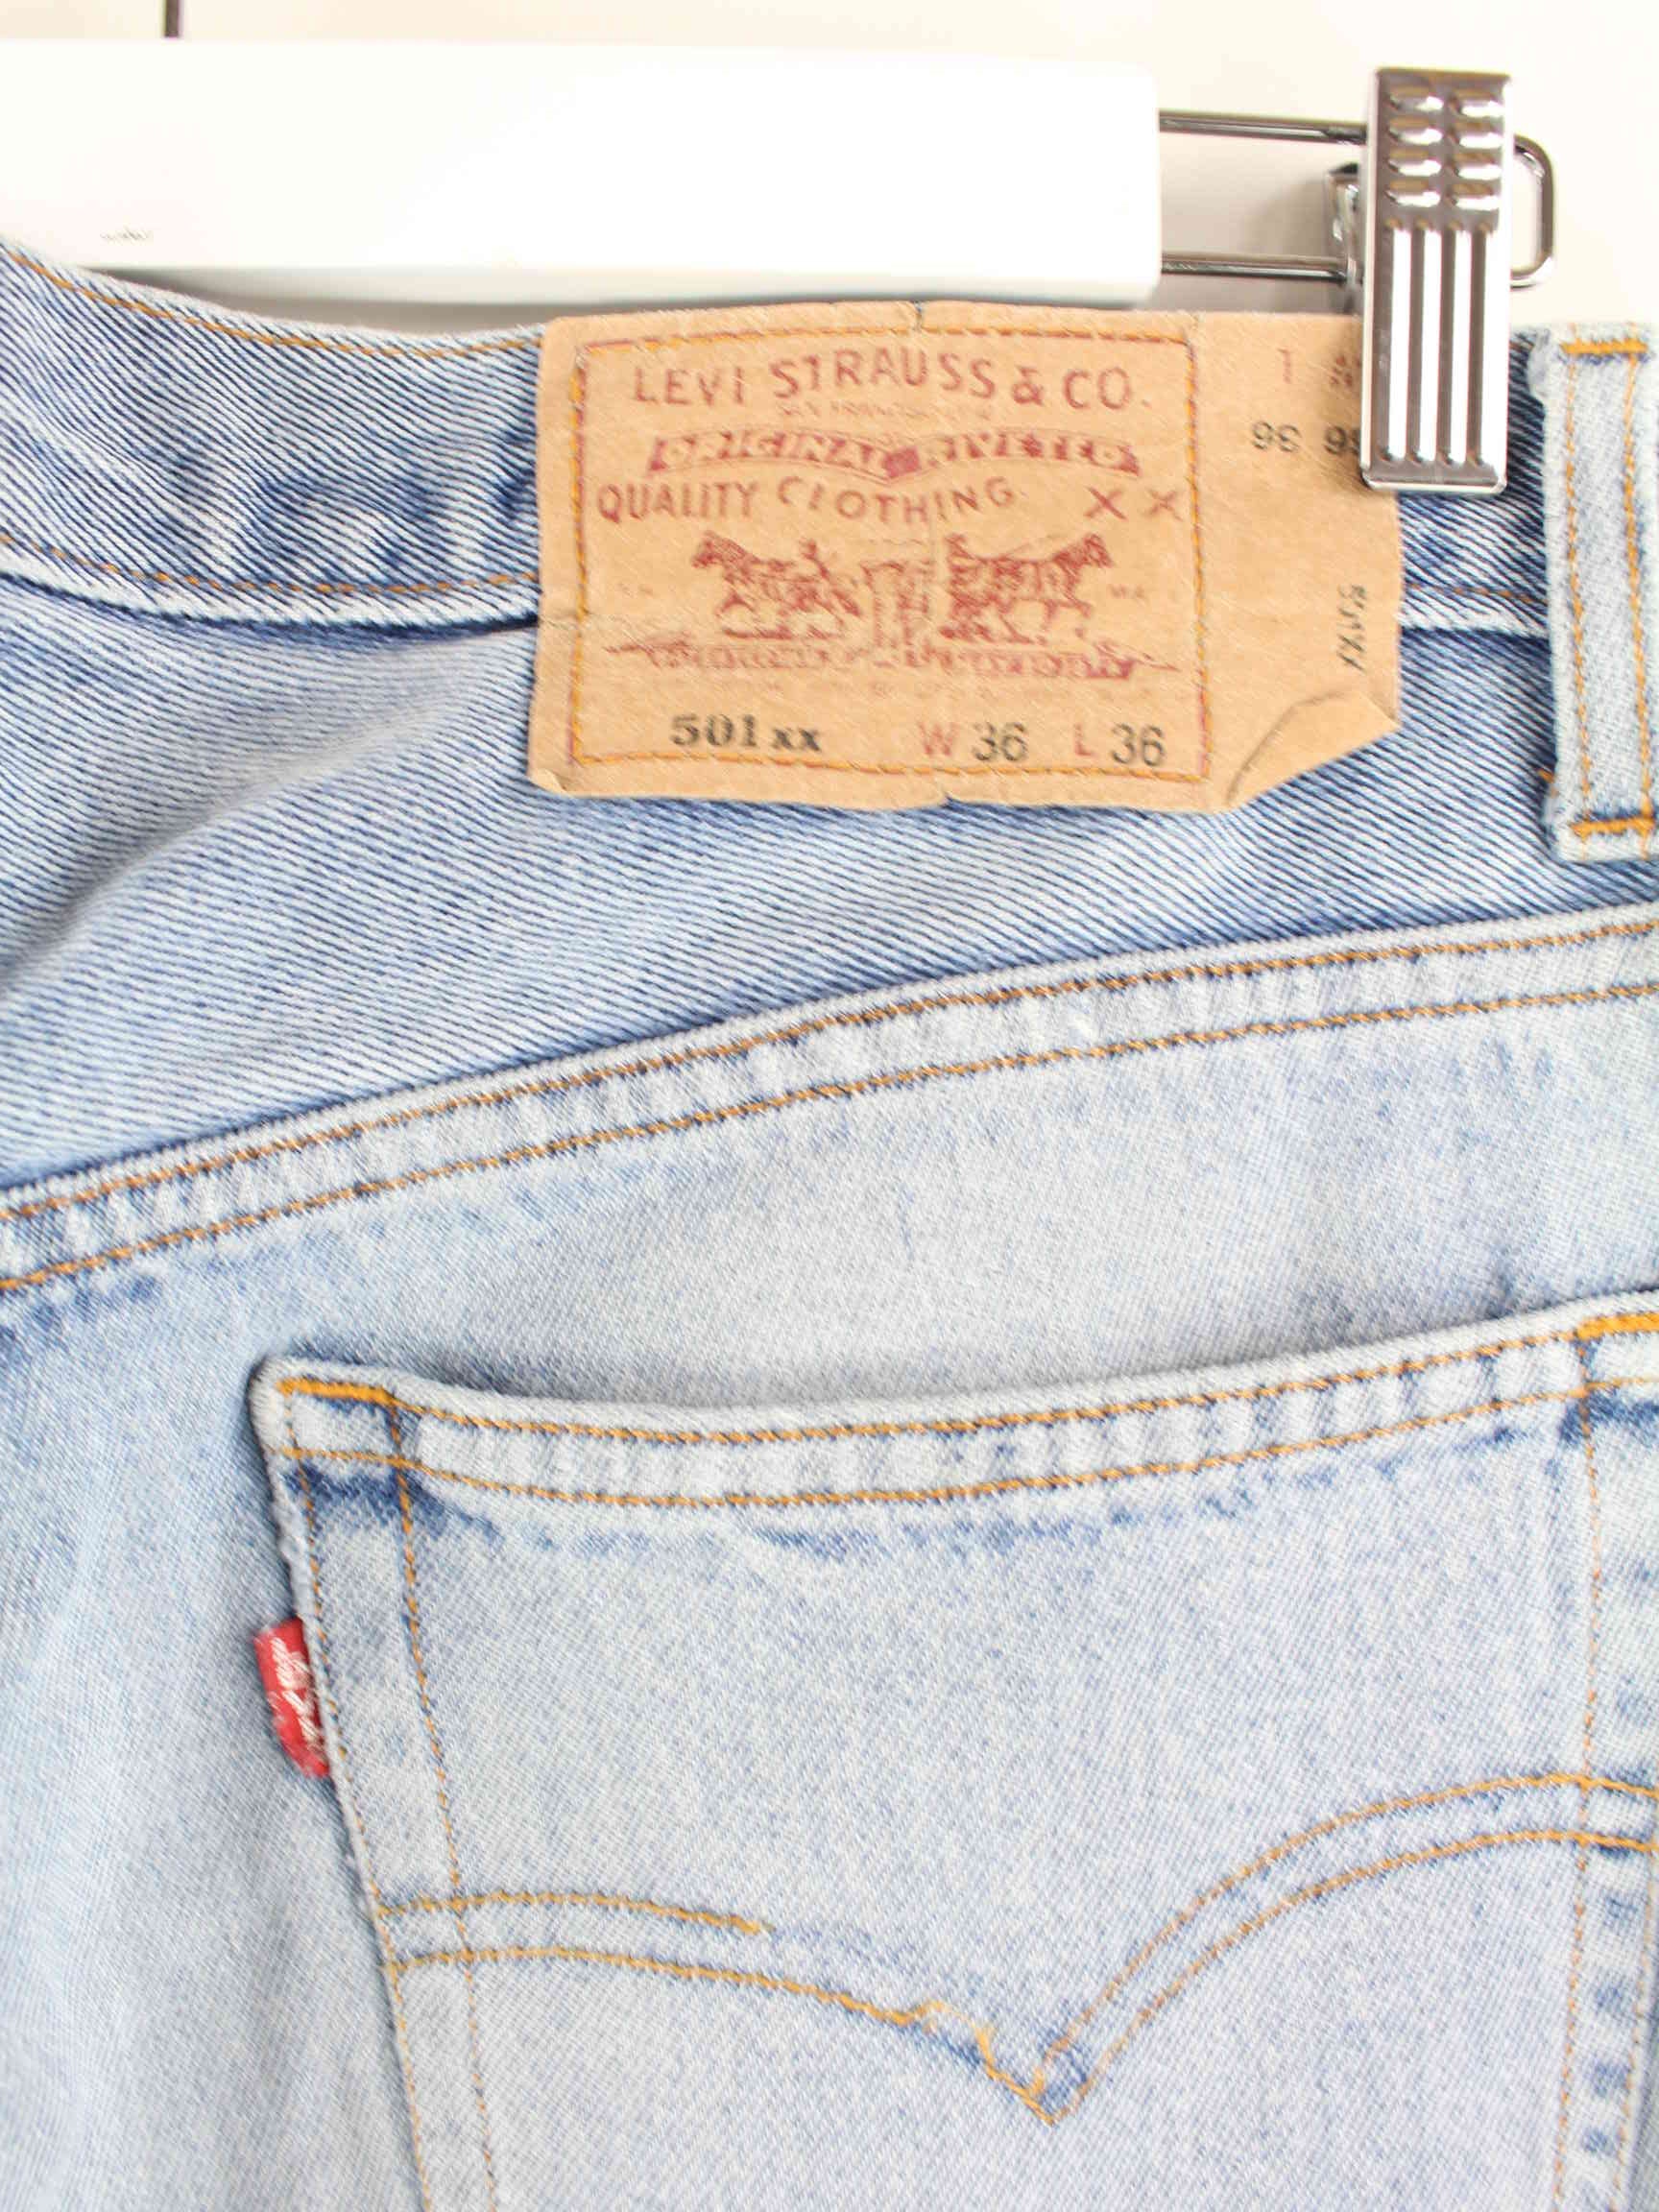 Levi's 501 Vintage 1993 Jeans Blau W36 L36 (detail image 4)